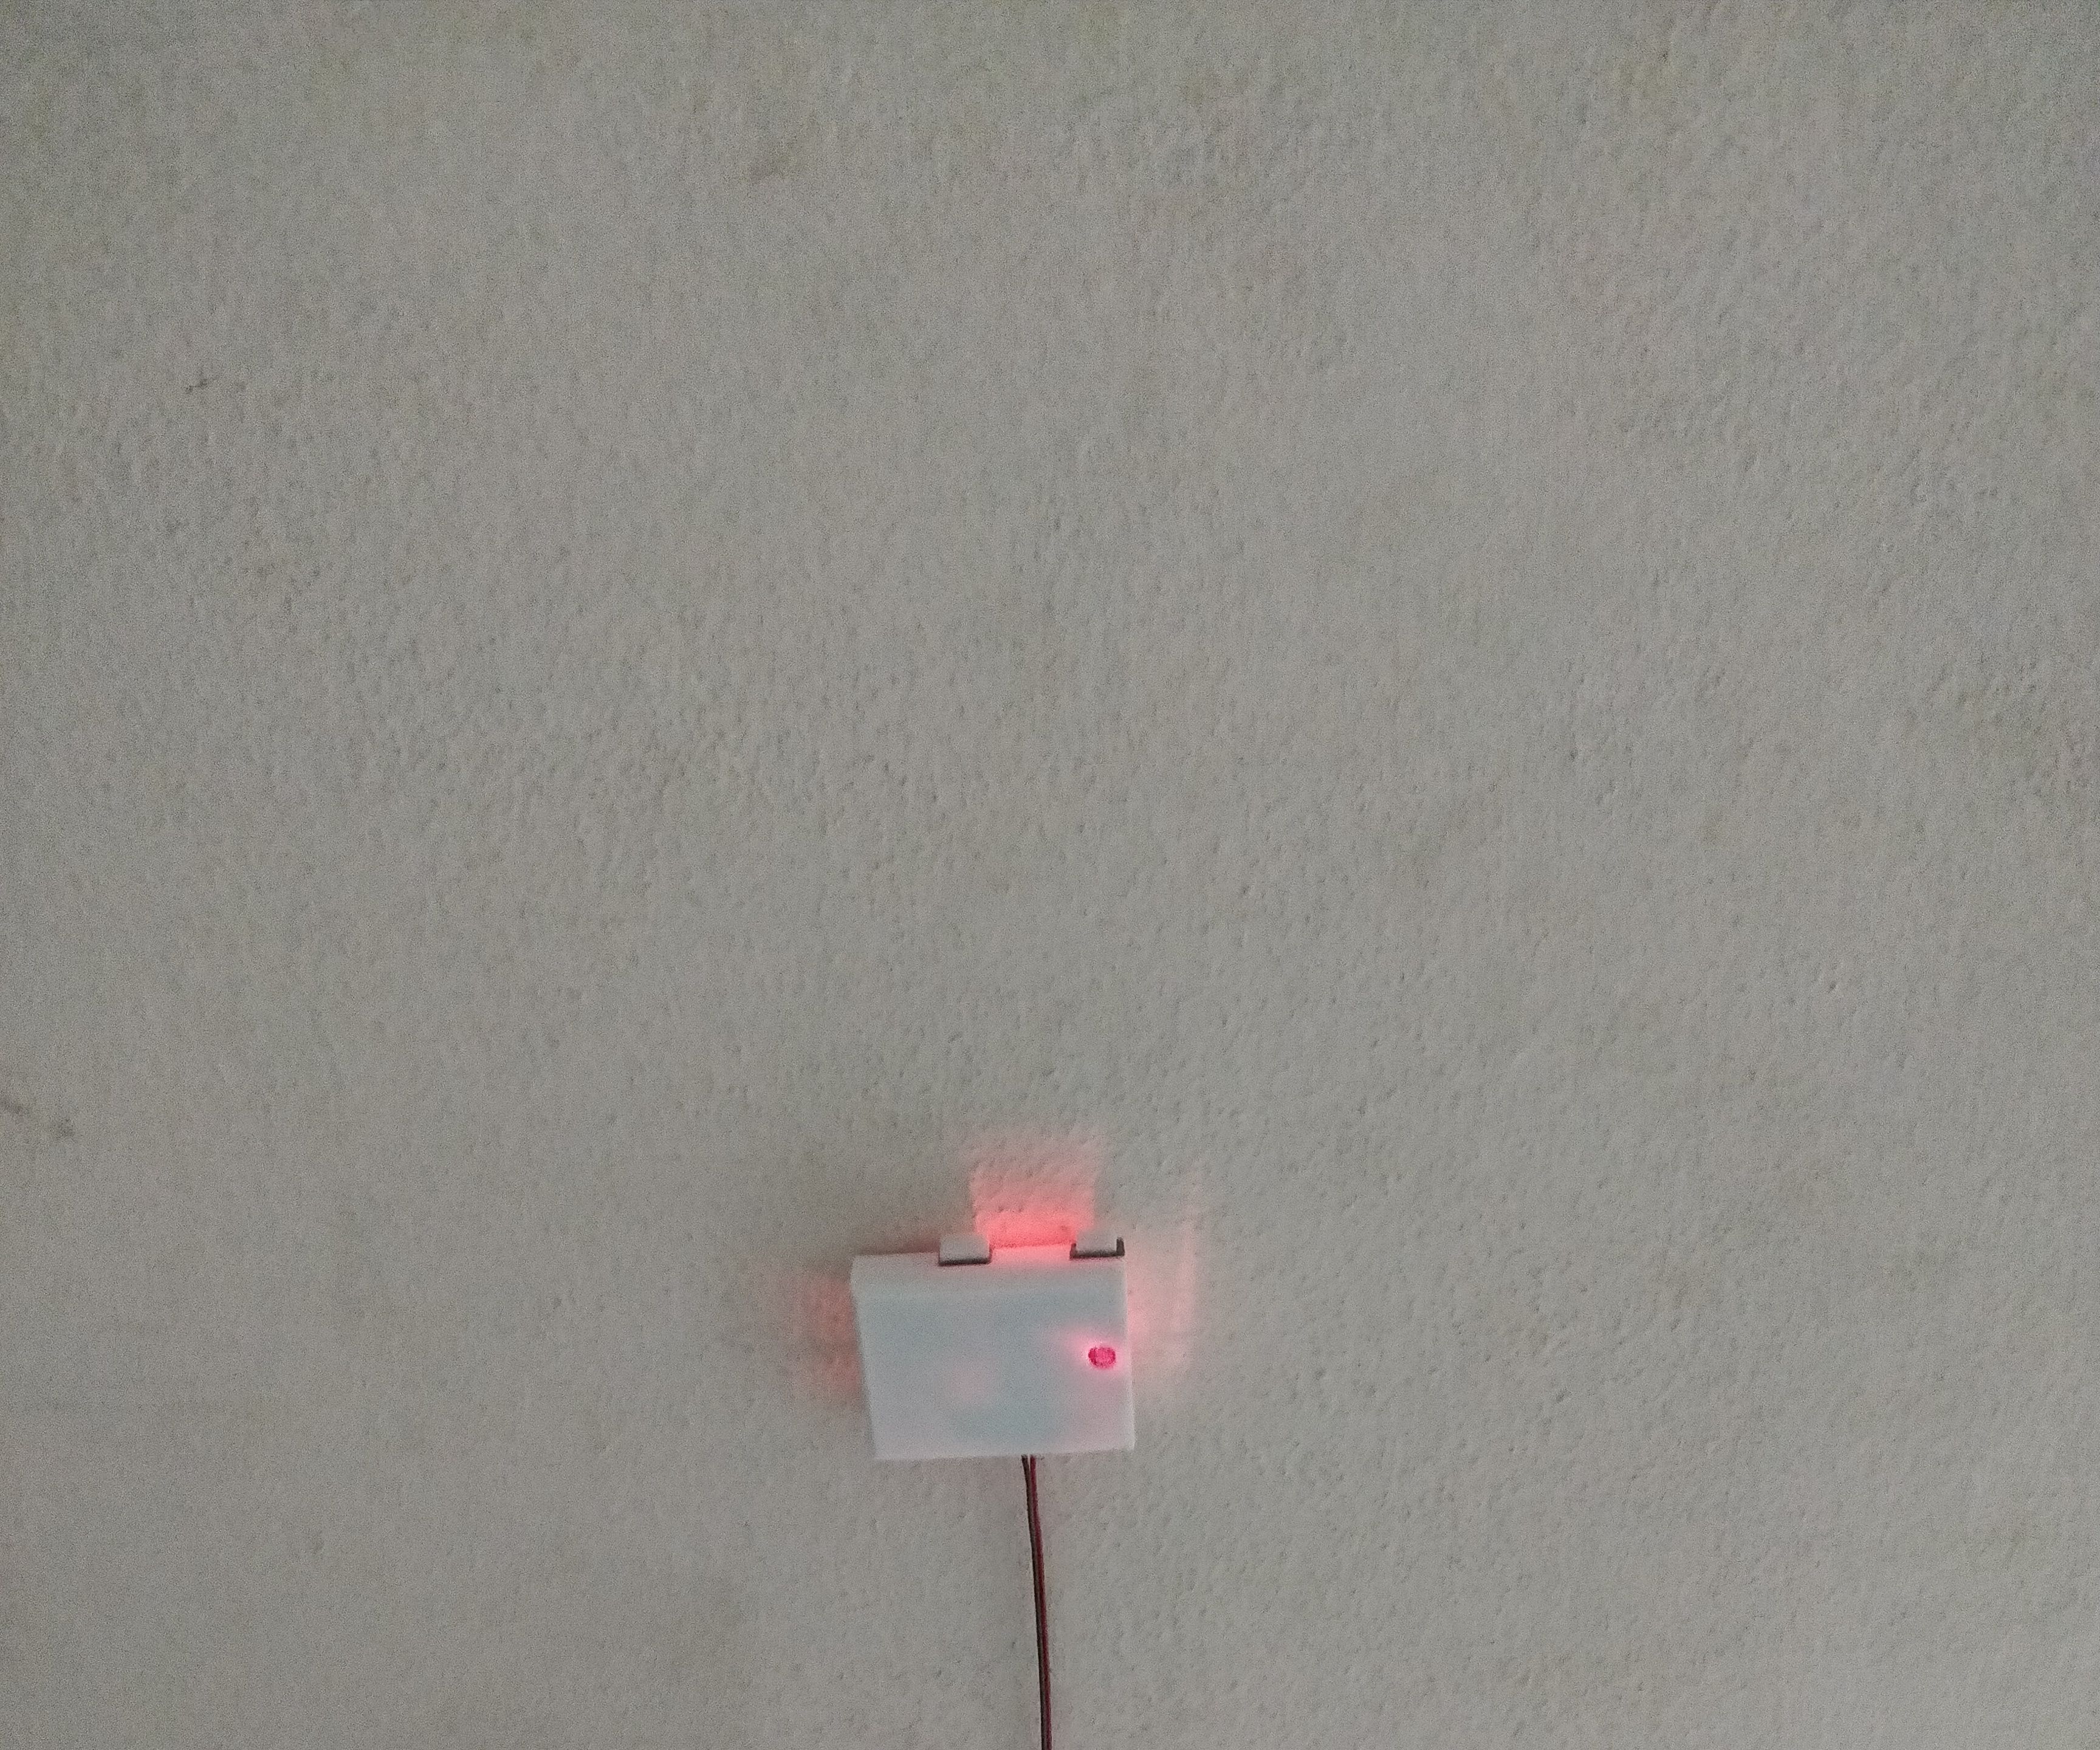 Night Burglar Alarm Using Arduino